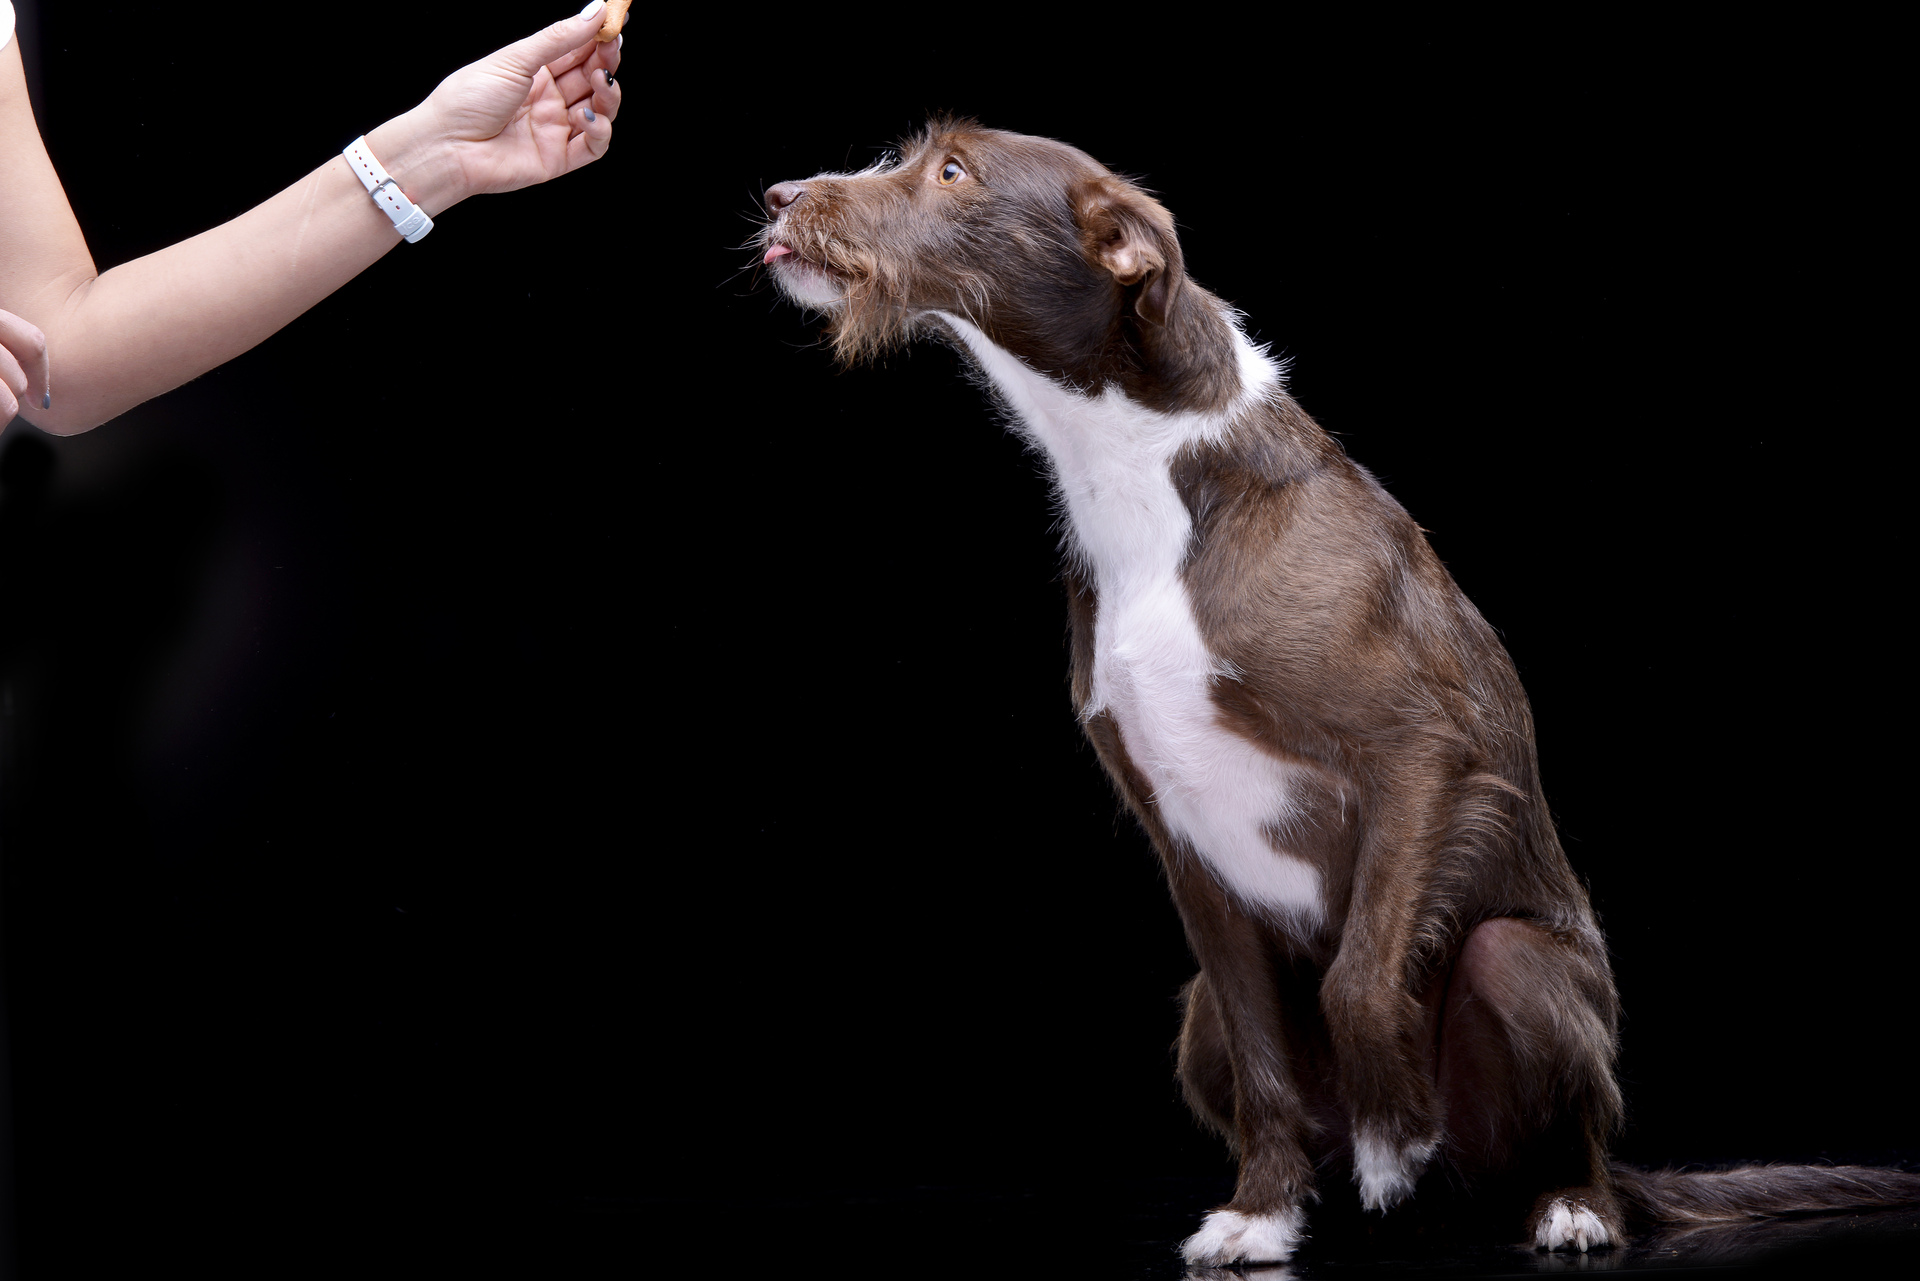 Ręka psiego behawiorysty, trzymająca przysmak dla psa nad jego głową